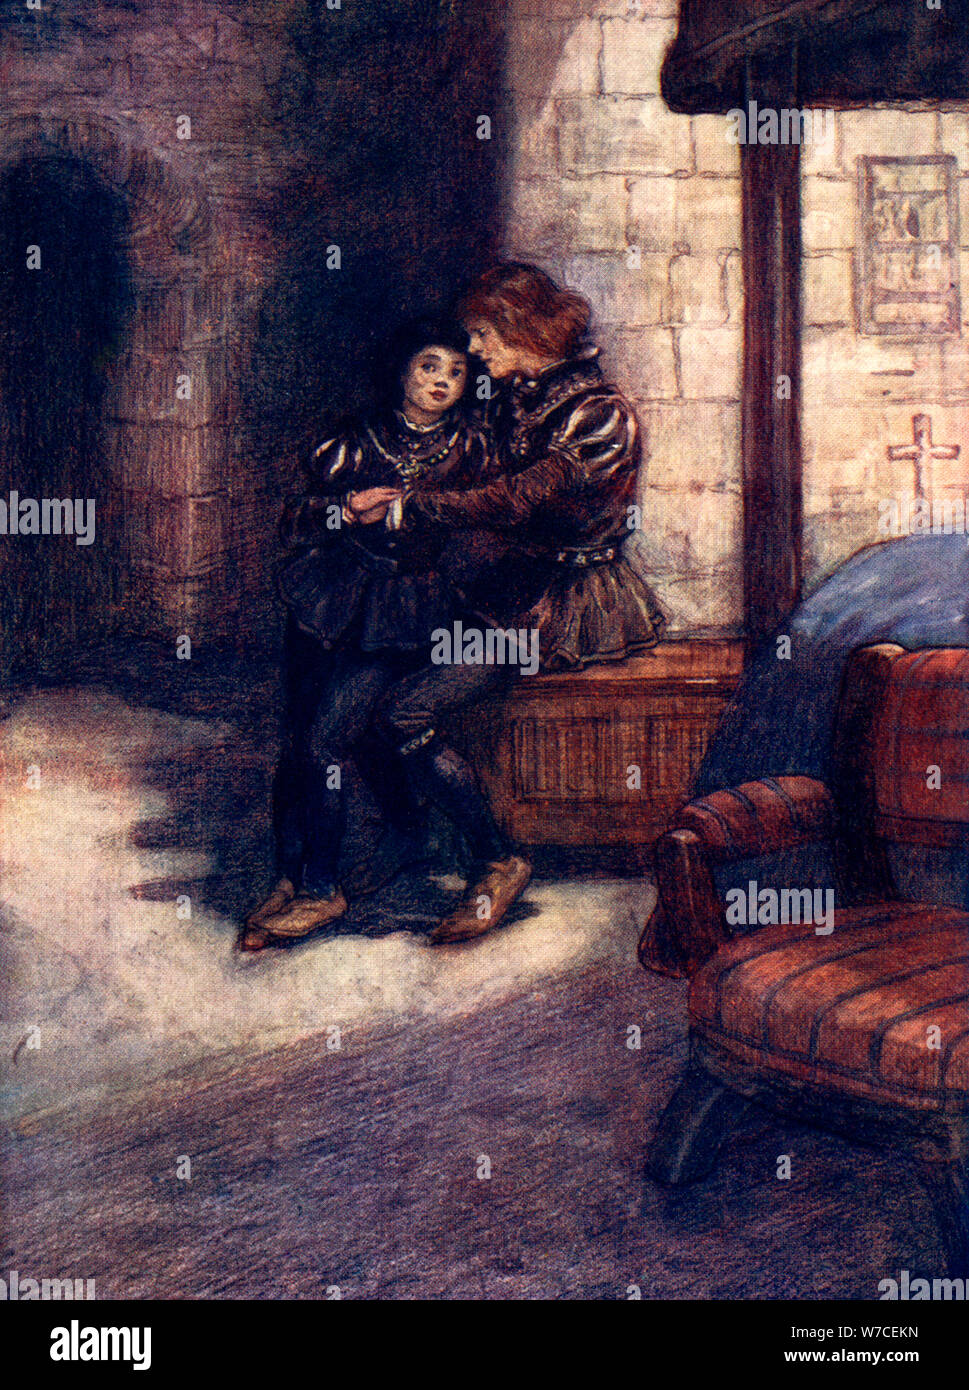 "I giorni sembrava molto lunga e noiosa per due ragazzi piccoli', c1483, (1905).Artista: A S Forrest Foto Stock